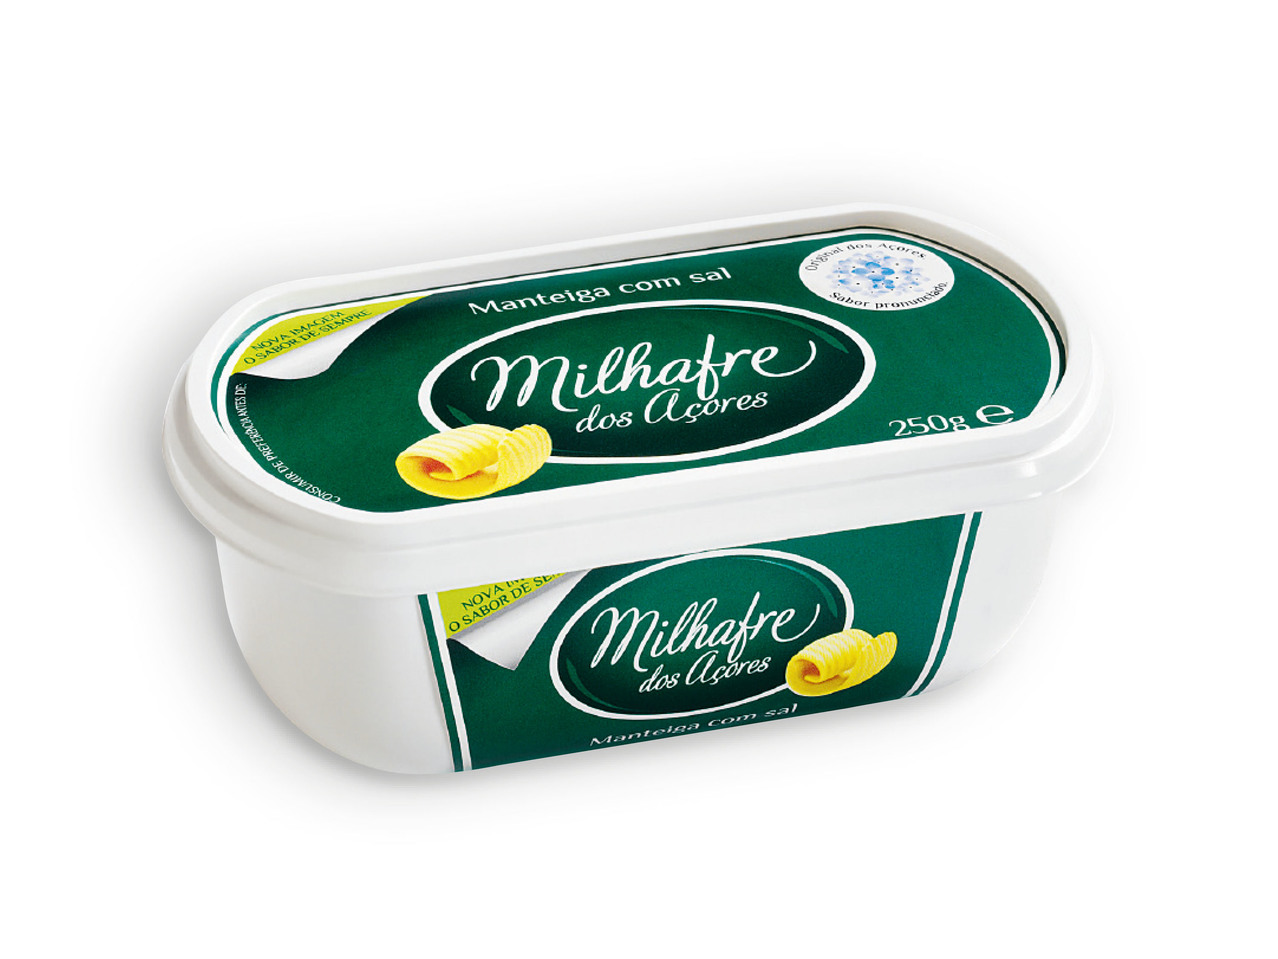 MILHAFRE(R) Manteiga com Sal